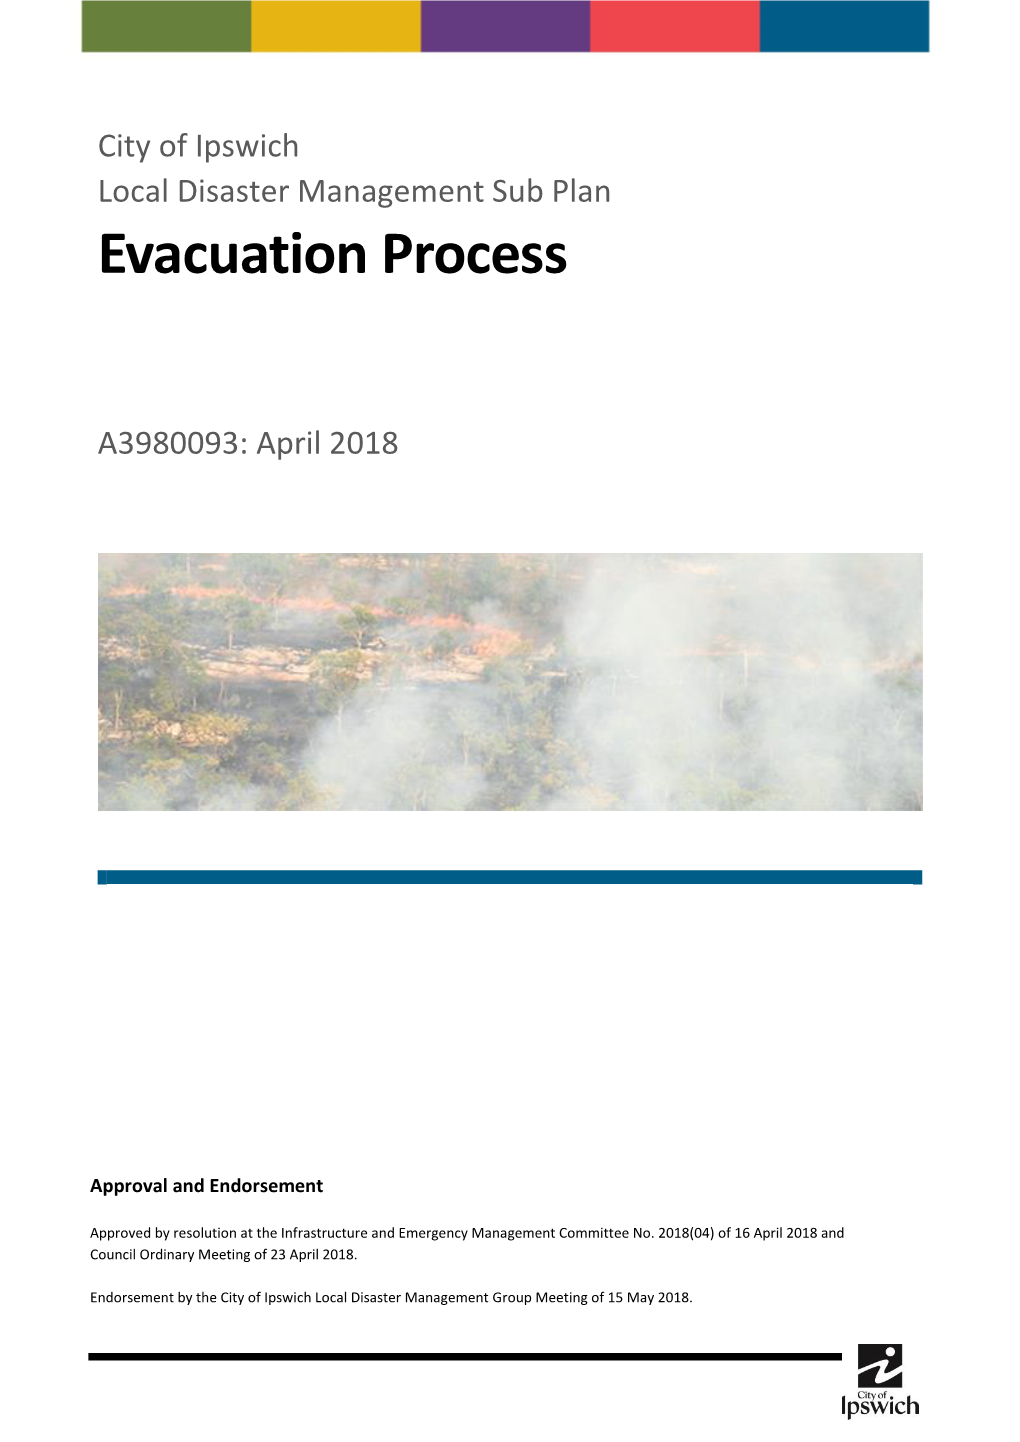 Evacuation Process Sub Plan